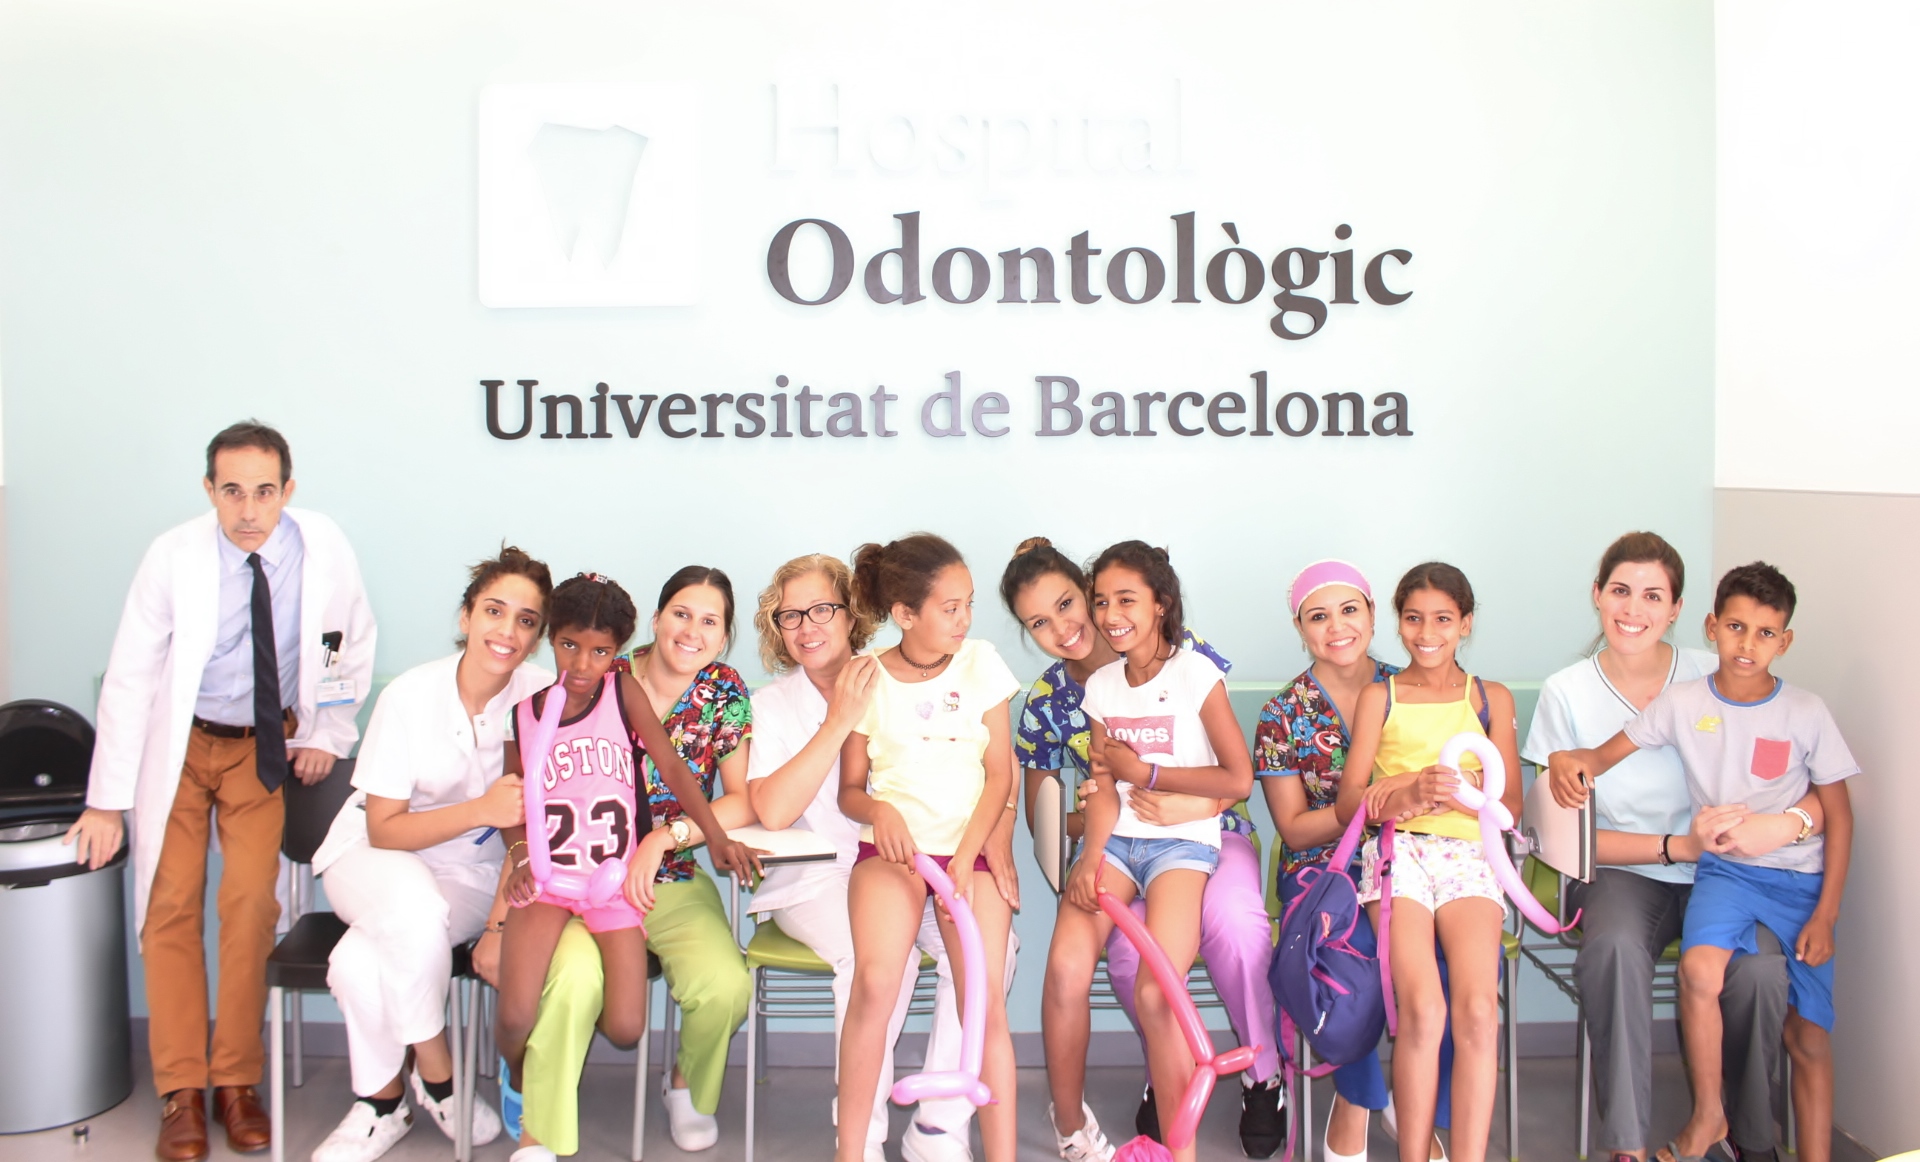 Infants saharauis reben visita odontològica gratuïta, un any més, a l’Hospital Odontològic UB